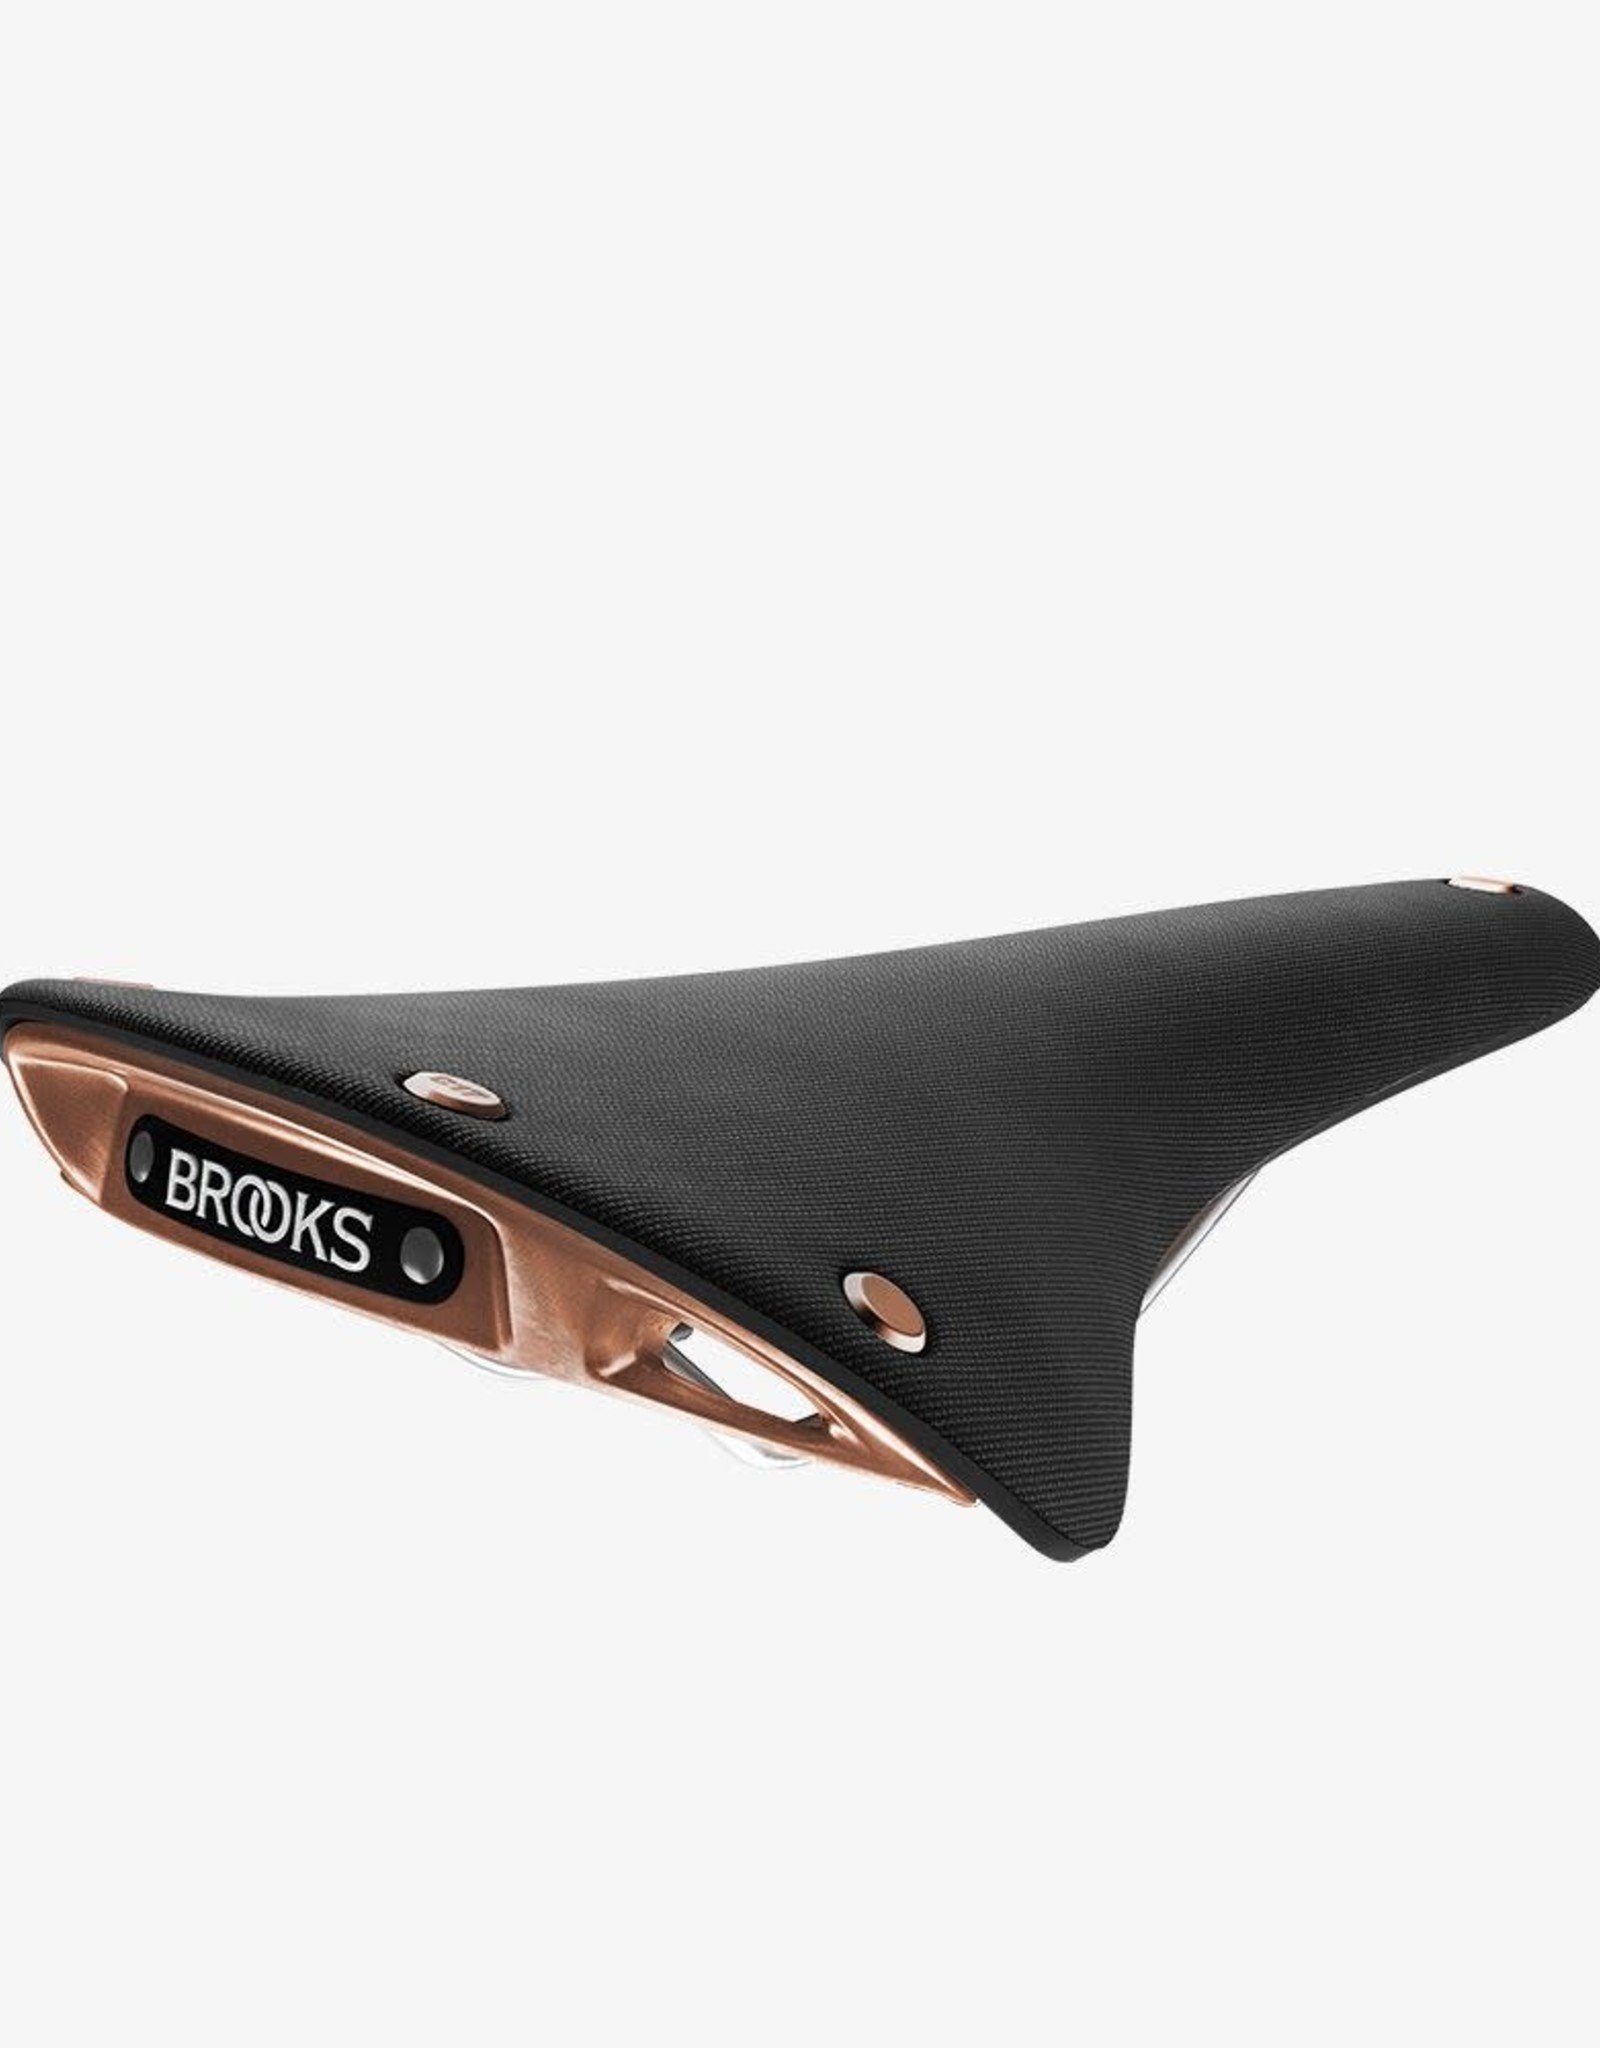 Brooks Brooks - C17 Cambium Special Copper, 164mm, Black